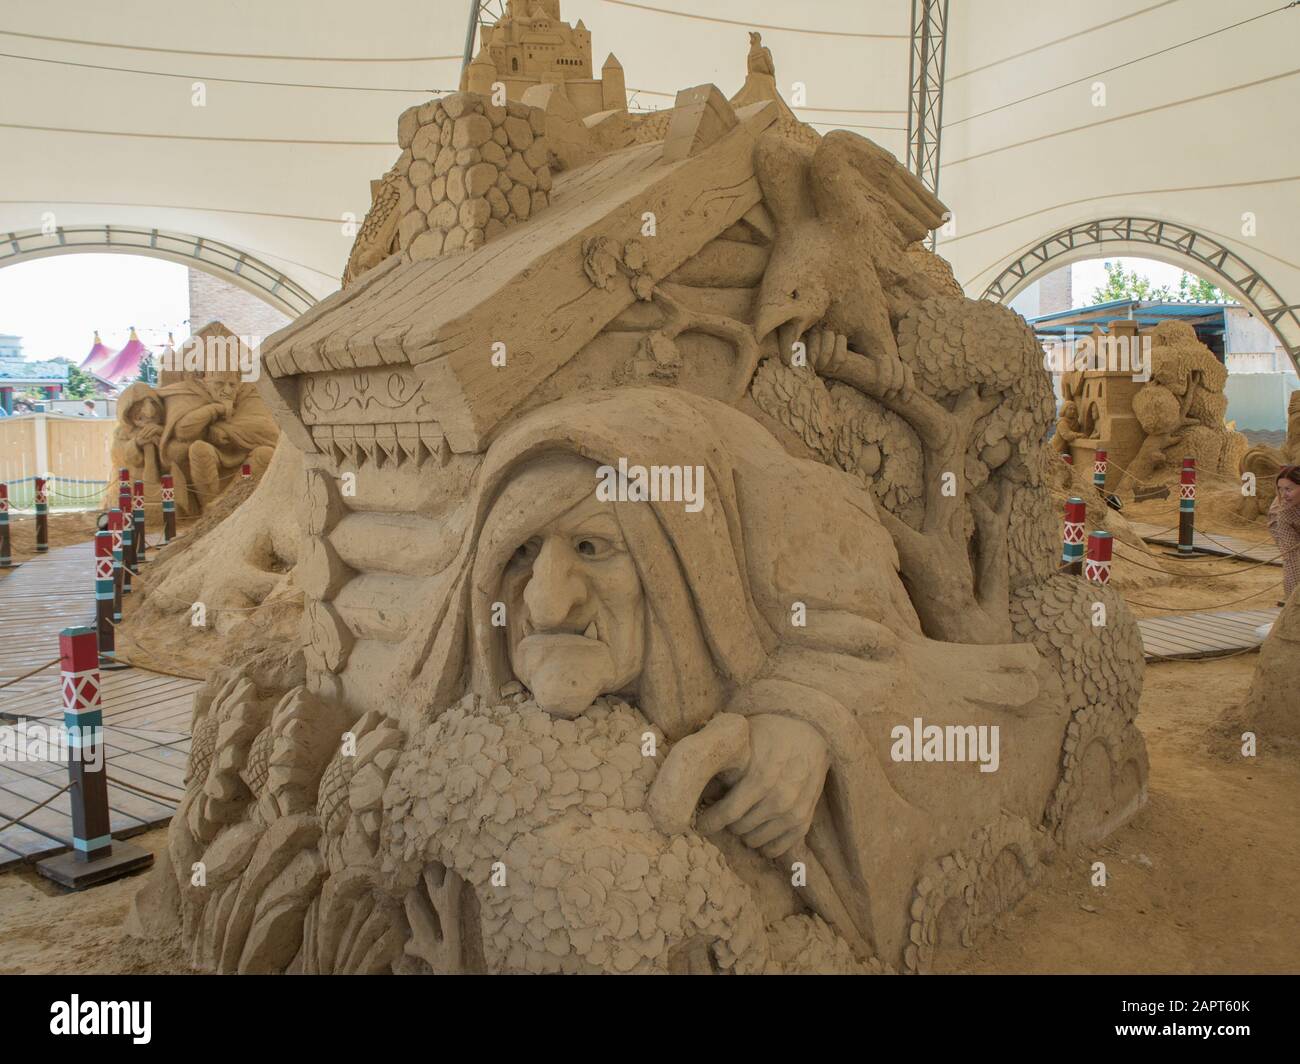 Sculptures de personnages de contes de fées russes en sable. Russie Sotchi 06 22 2019 Banque D'Images